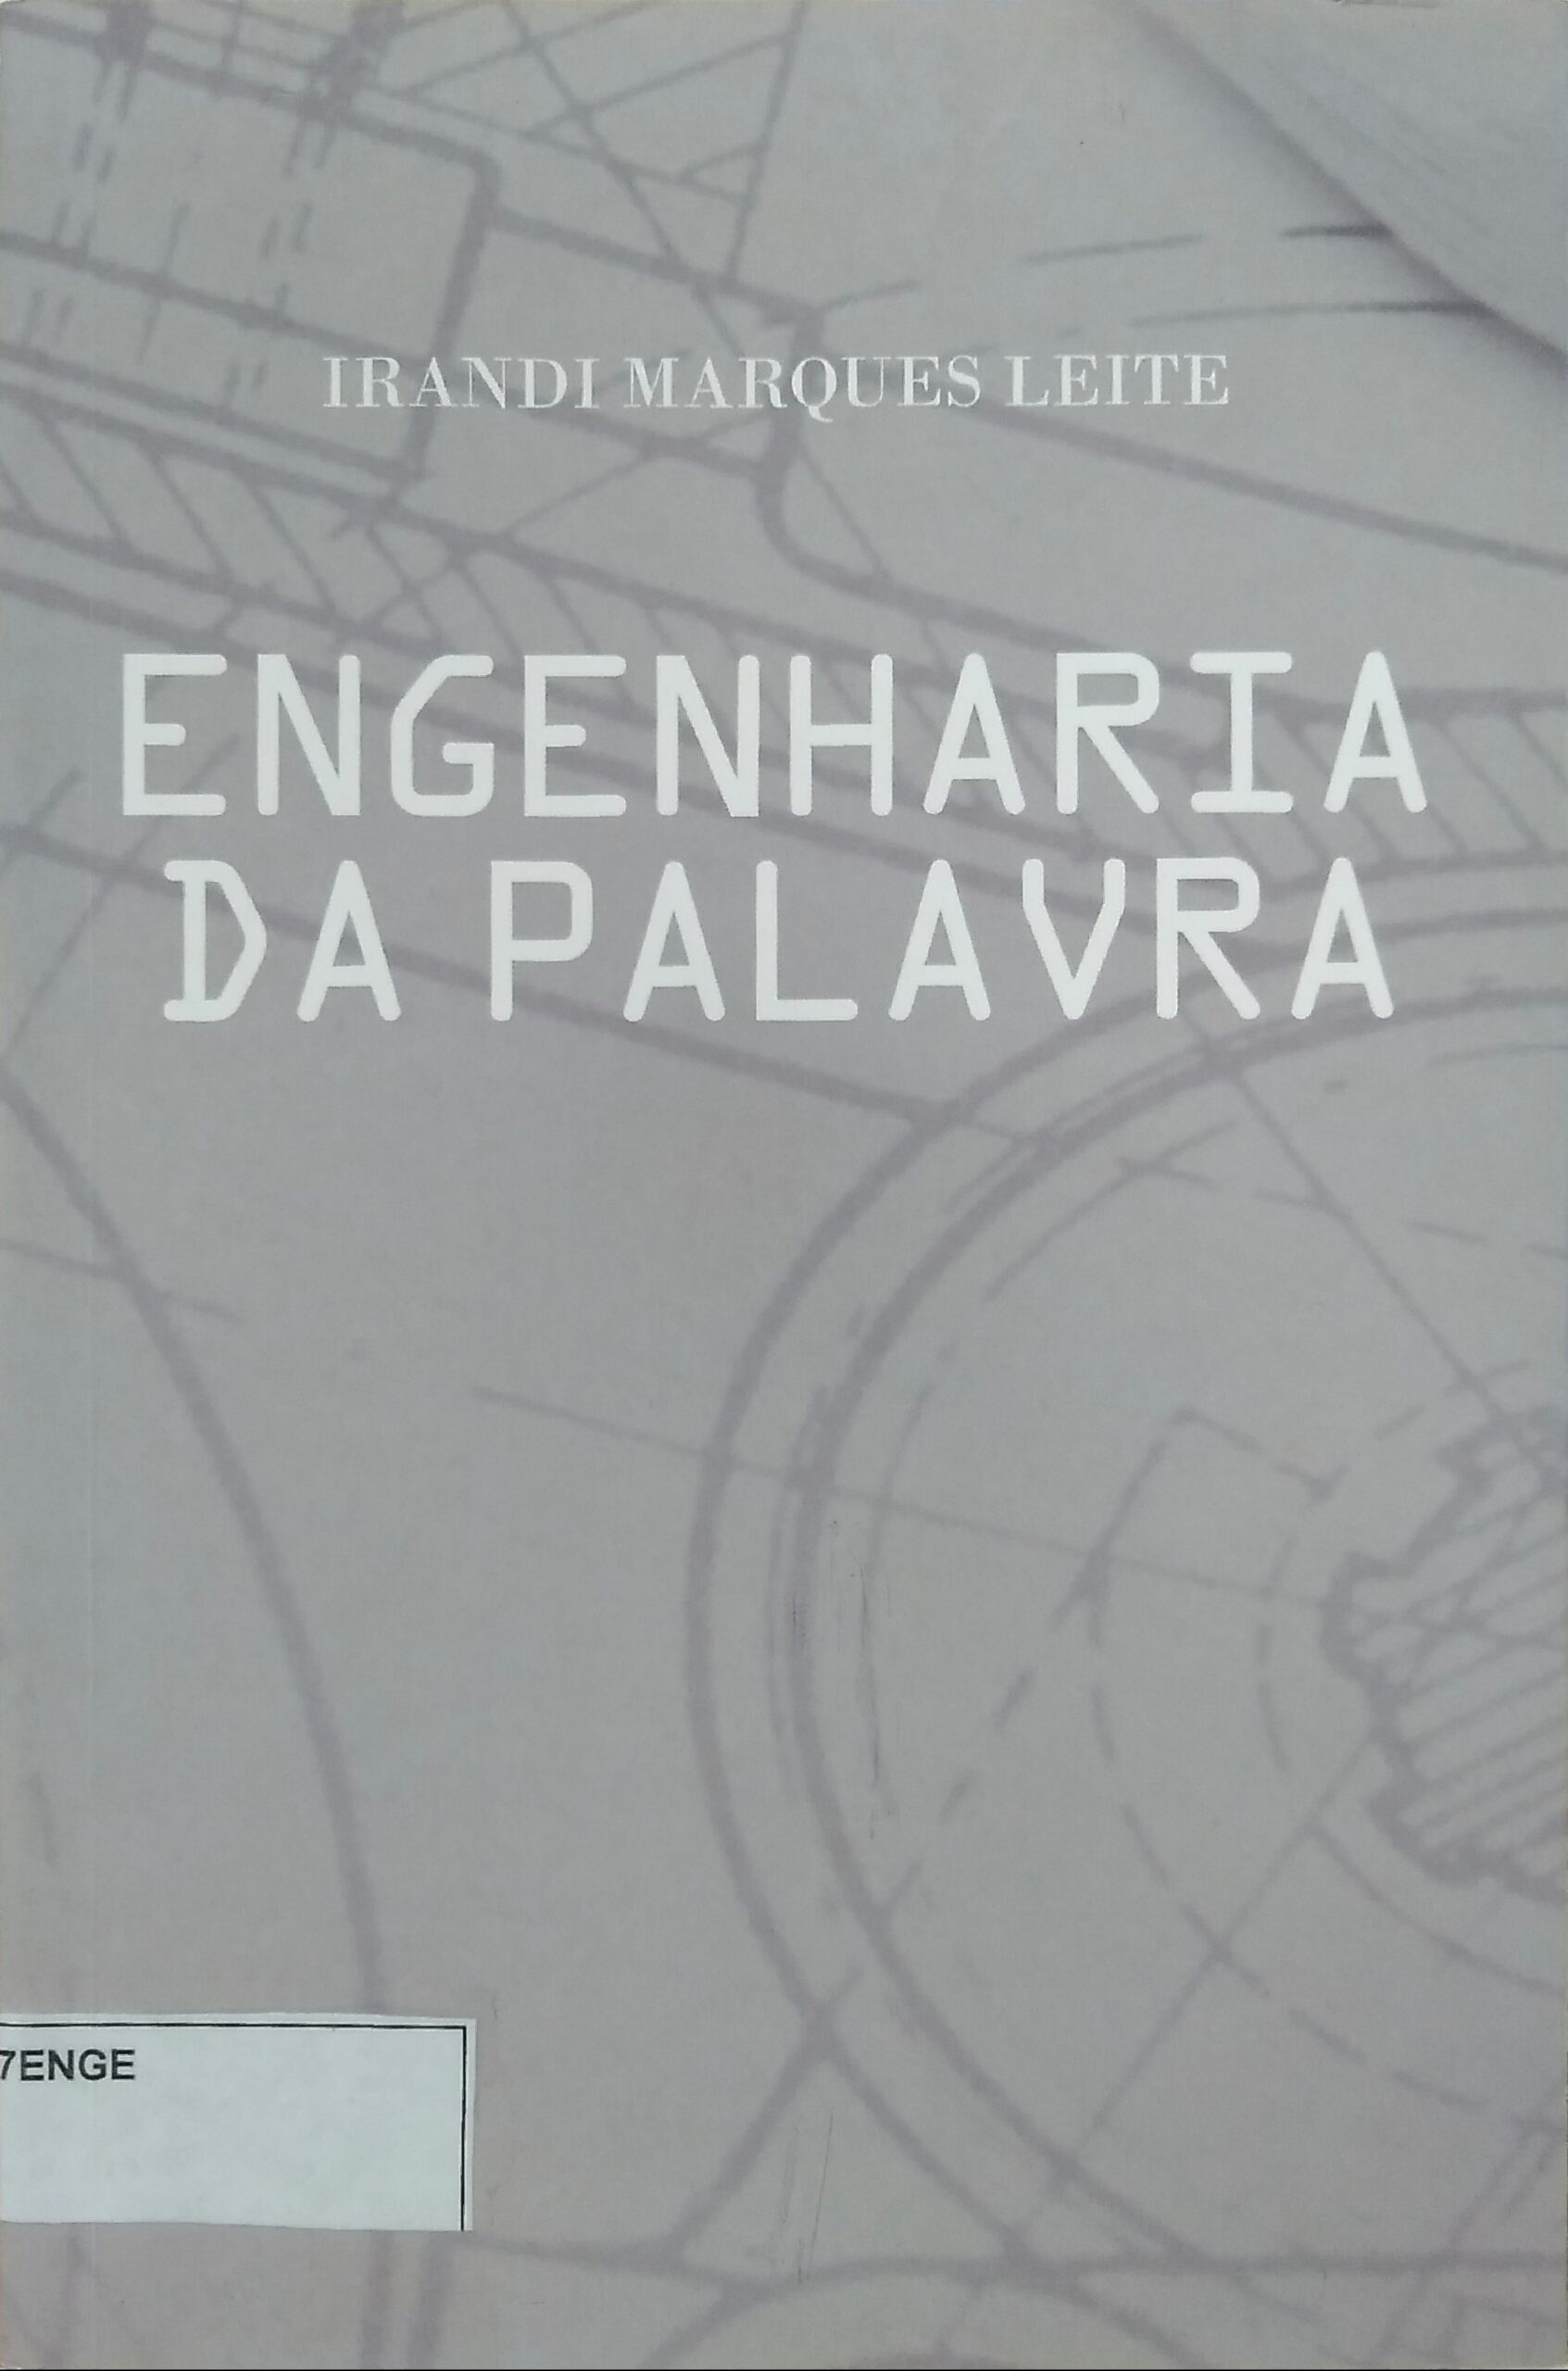 Imagem da capa do Livro com informações sobre o título e autoria.